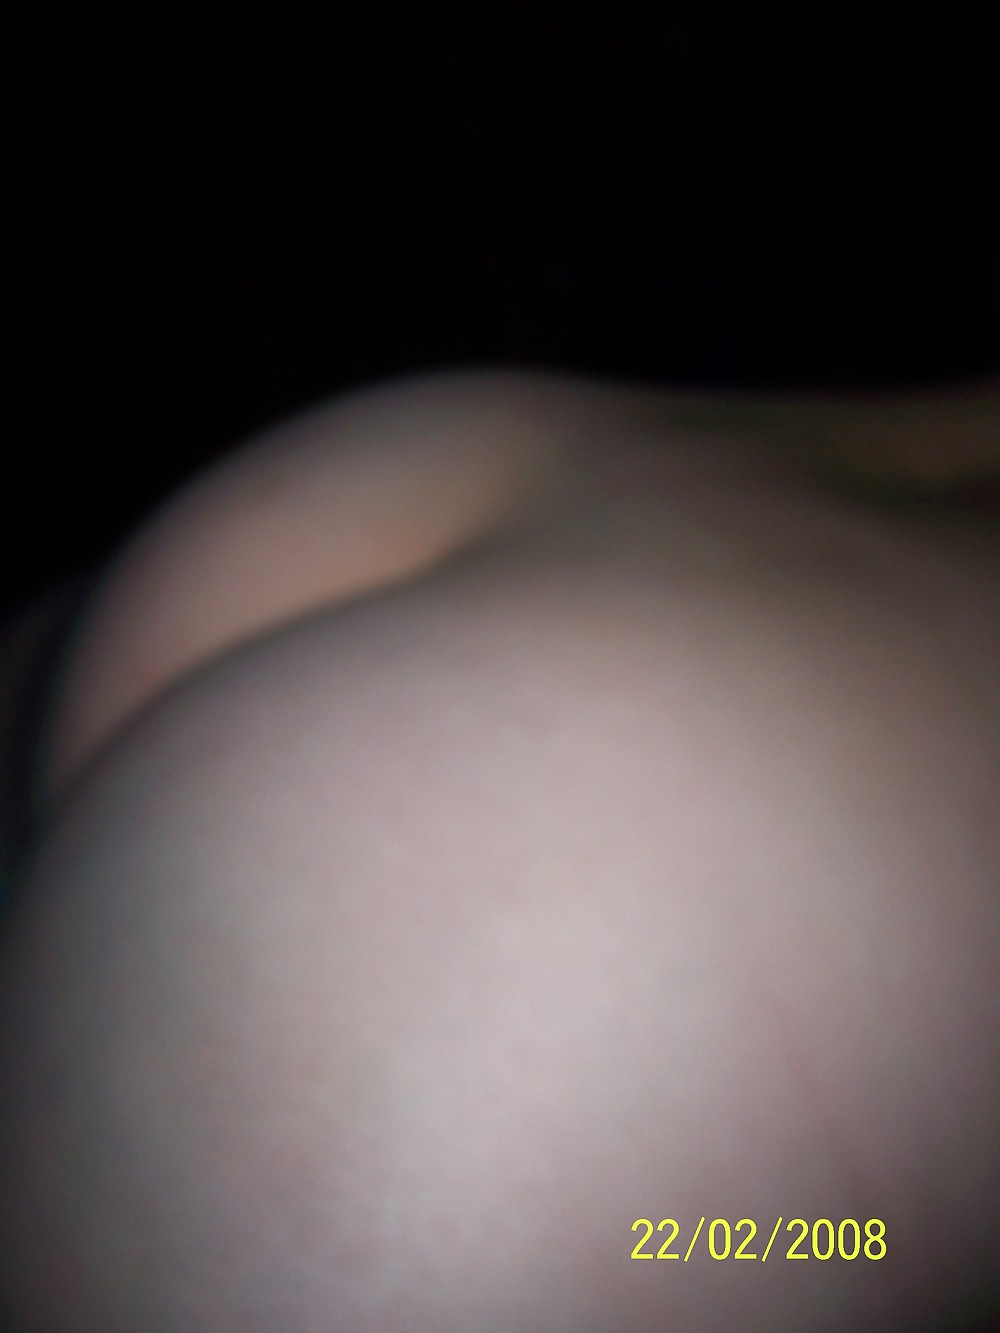 The ass of my girlfriend